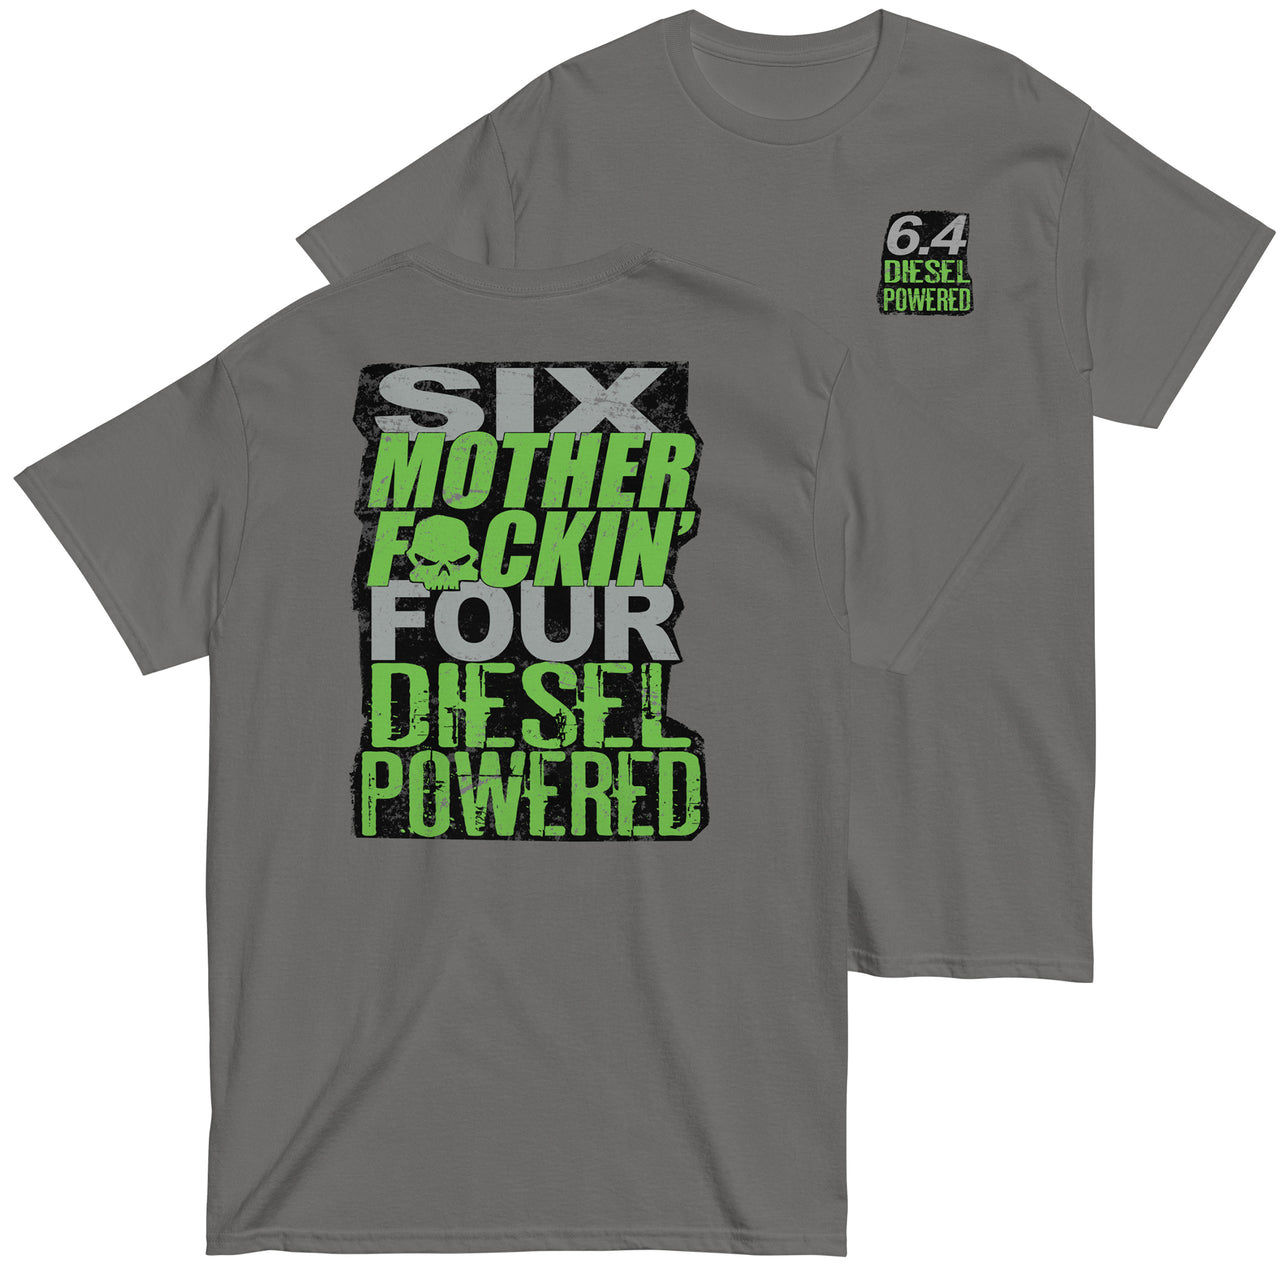 6.4 MF'N Power Stroke T-Shirt in grey